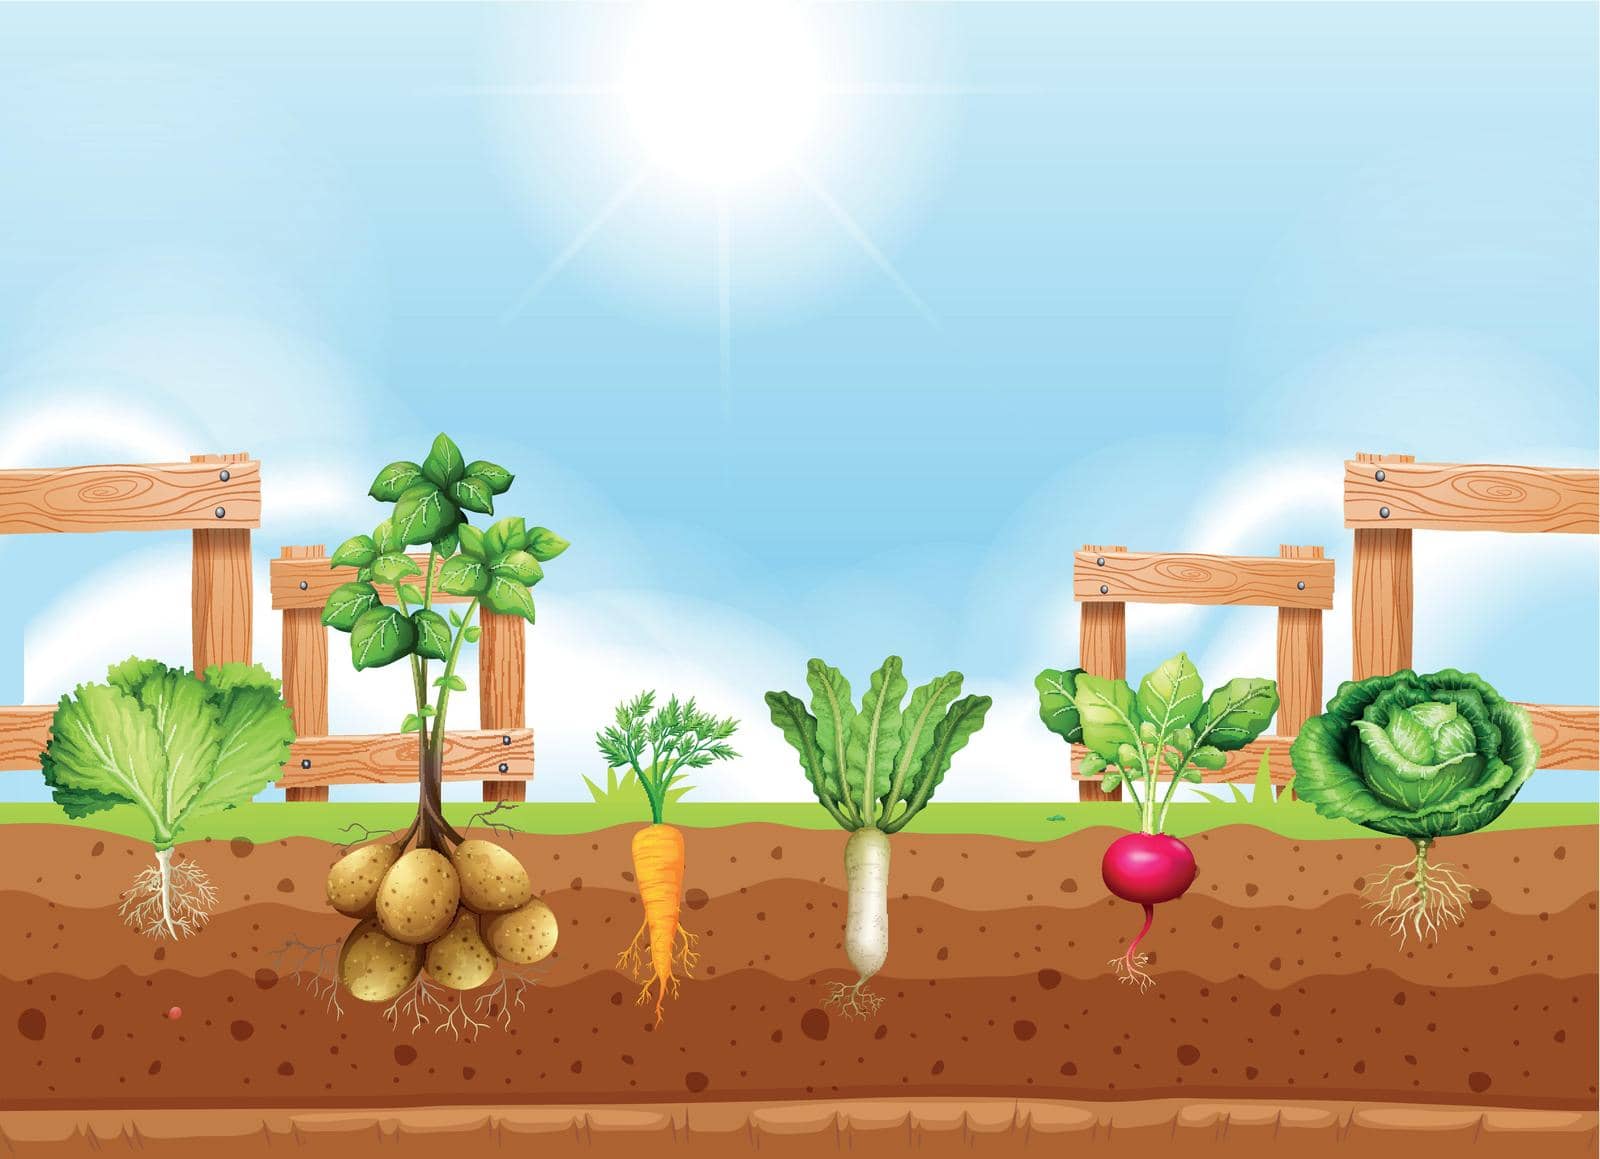 Set of different vegetable crop illustration